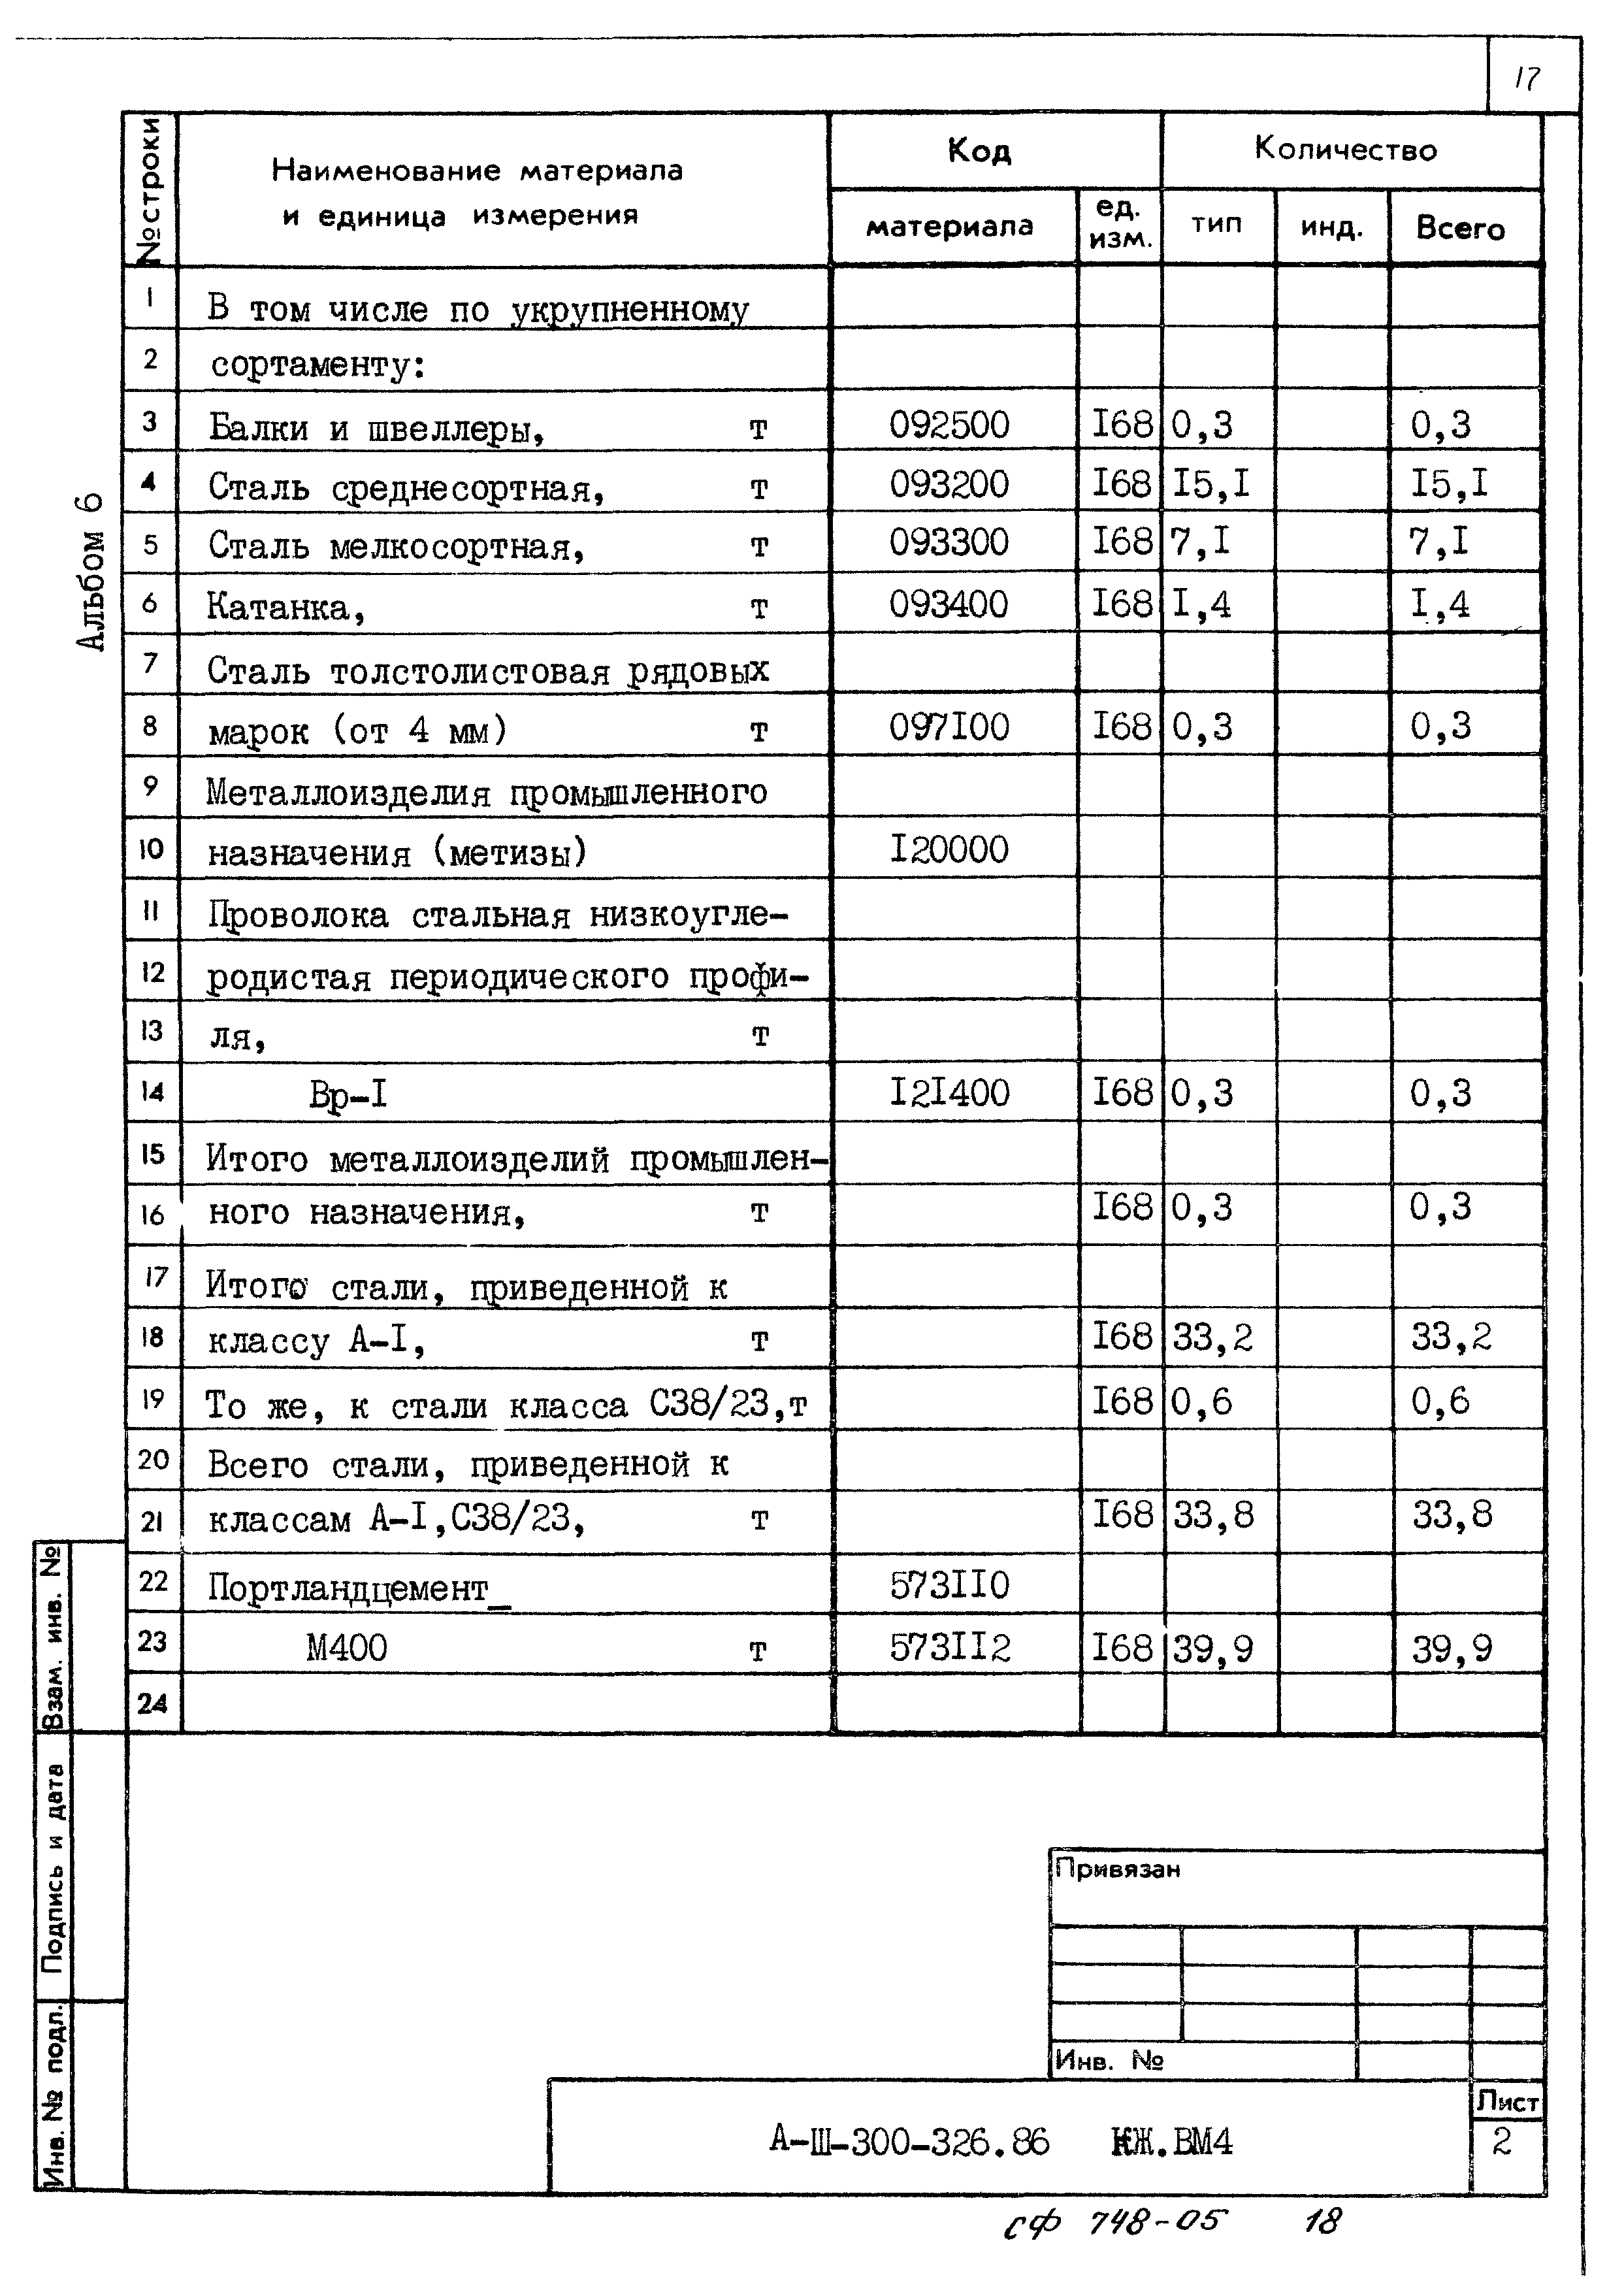 Типовой проект А-II,III,IV-300-326.86